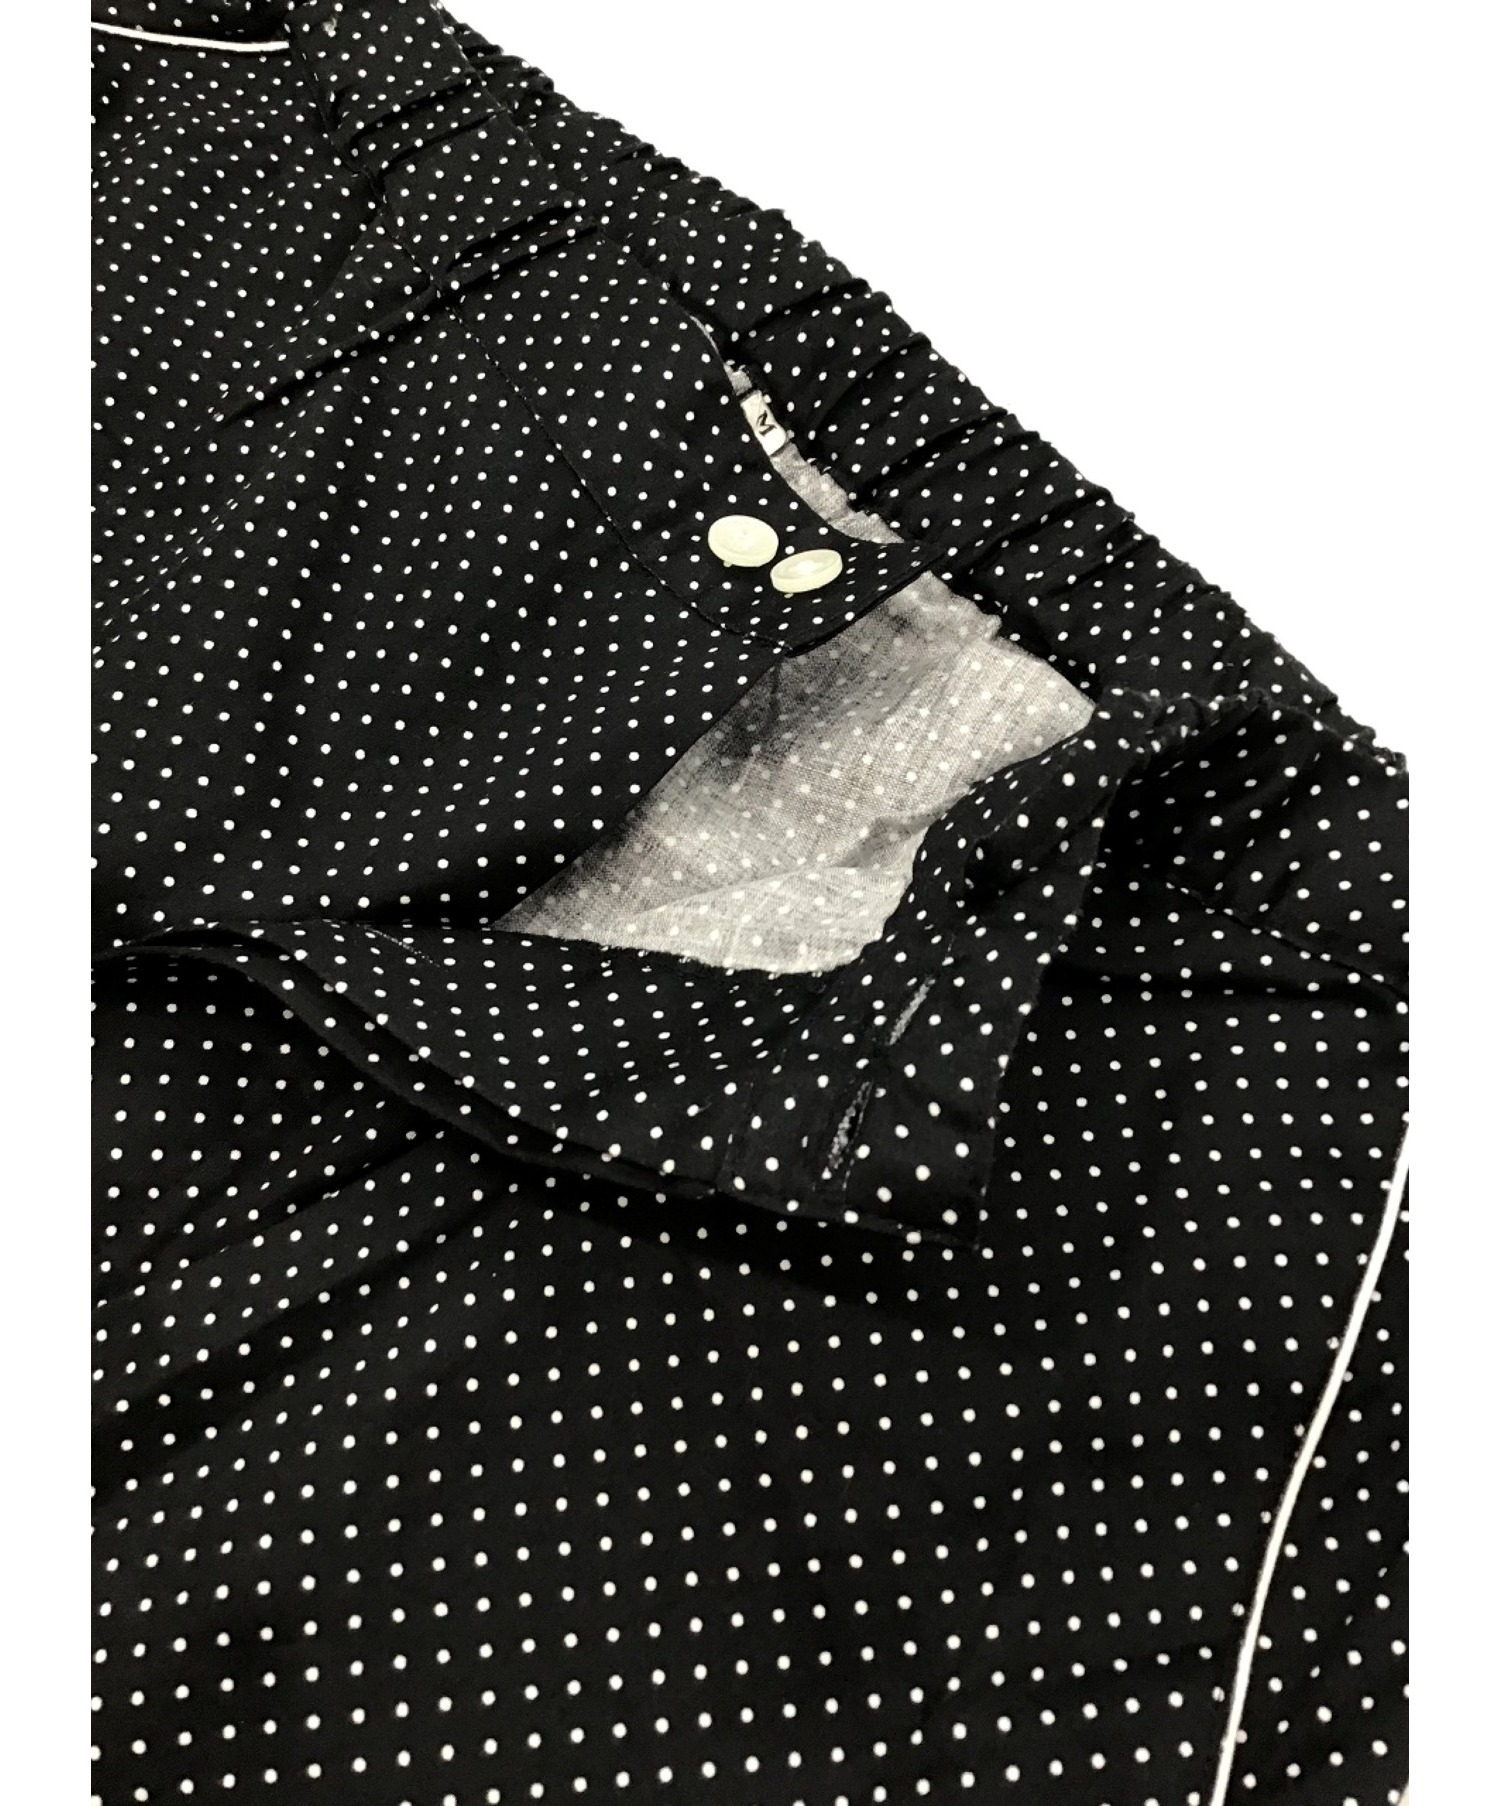 Yves Saint Laurent (イヴサンローラン) 古着パジャマセットアップ ブラック×ホワイト サイズ:M